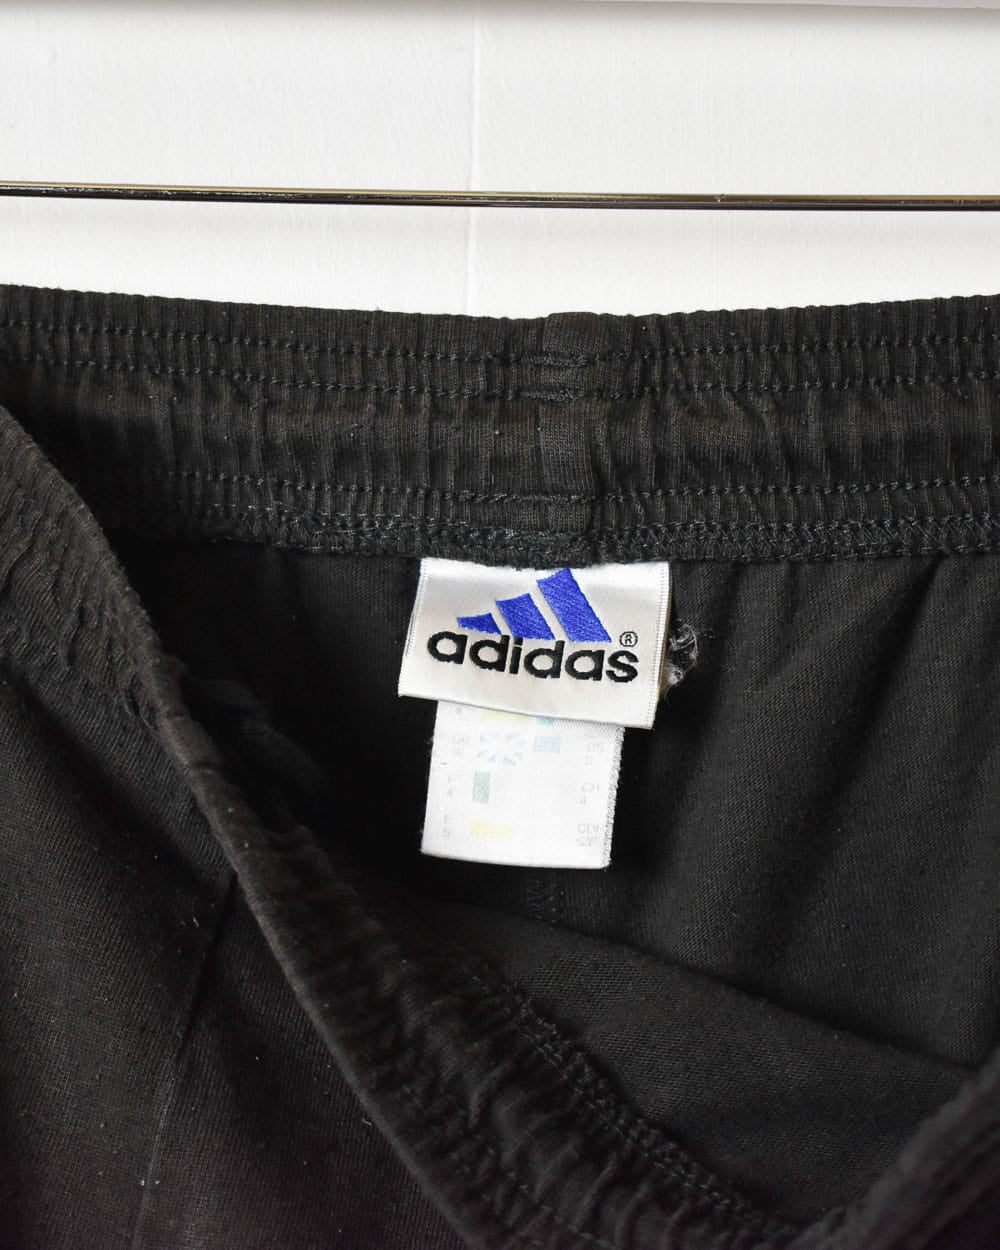 Black Adidas Shorts - Small